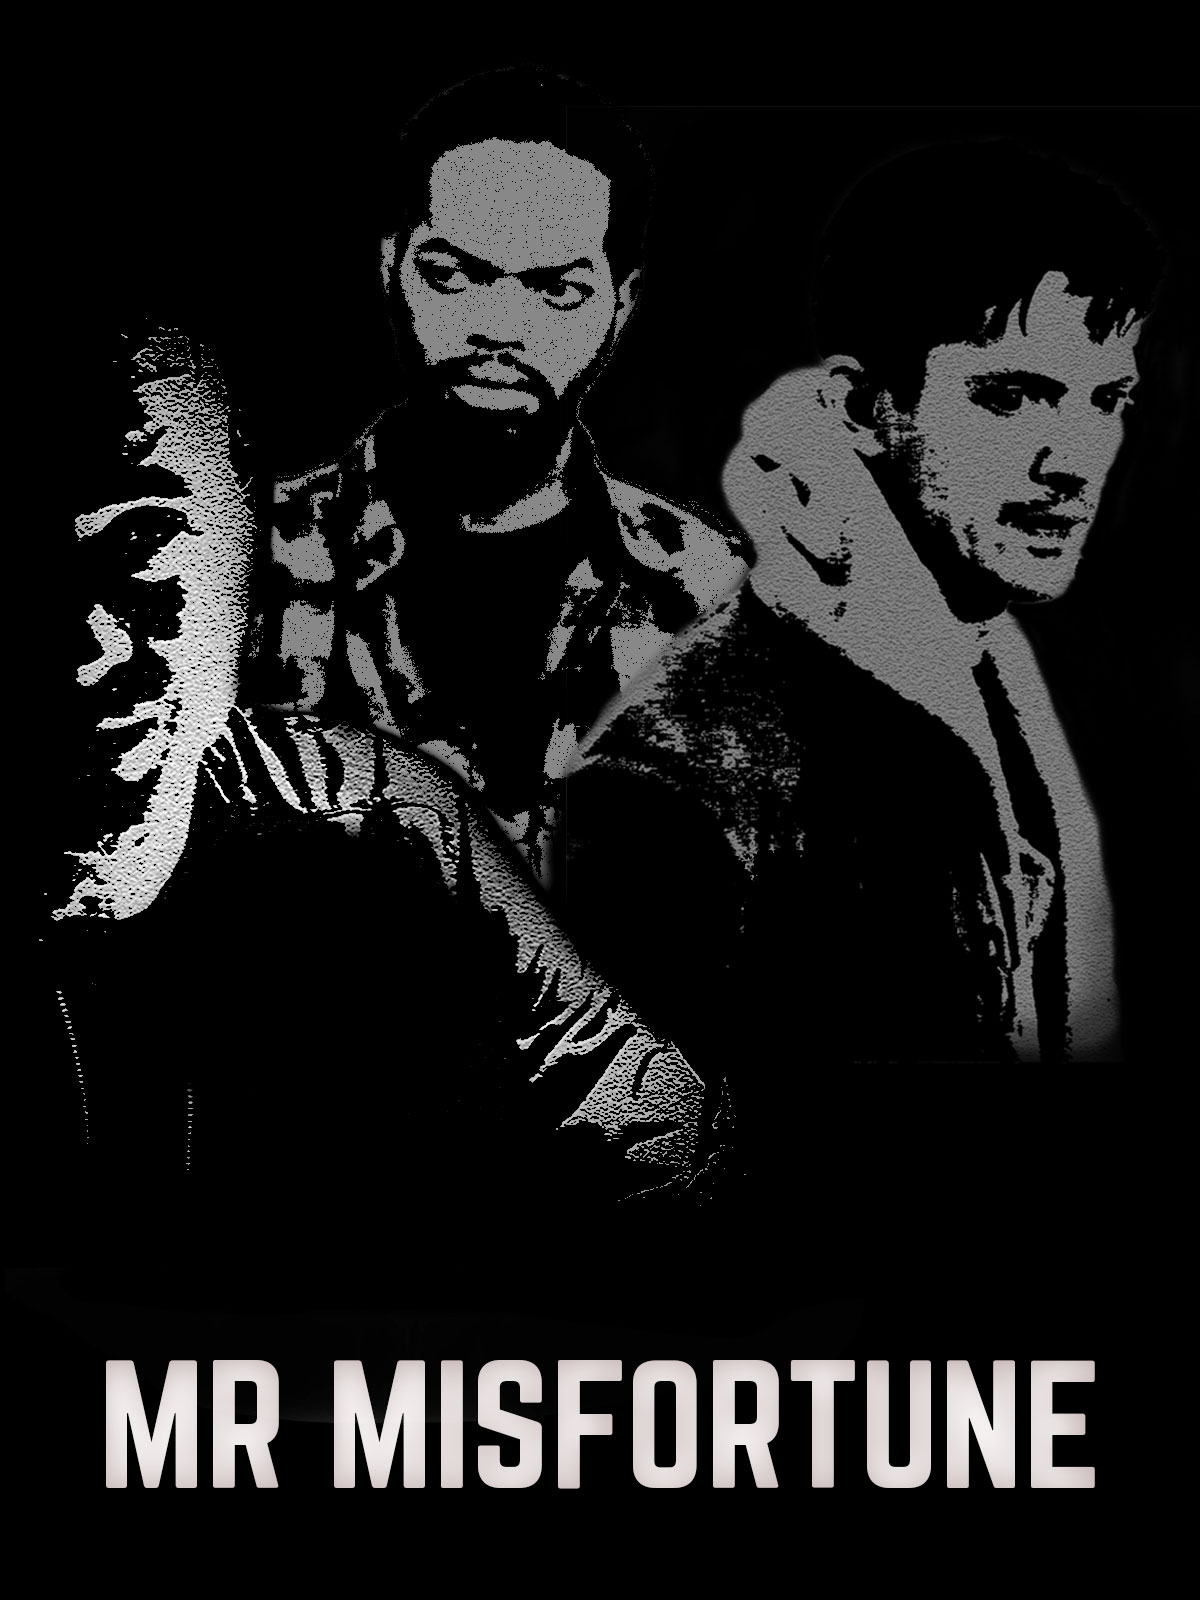 Mr Misfortune - main image